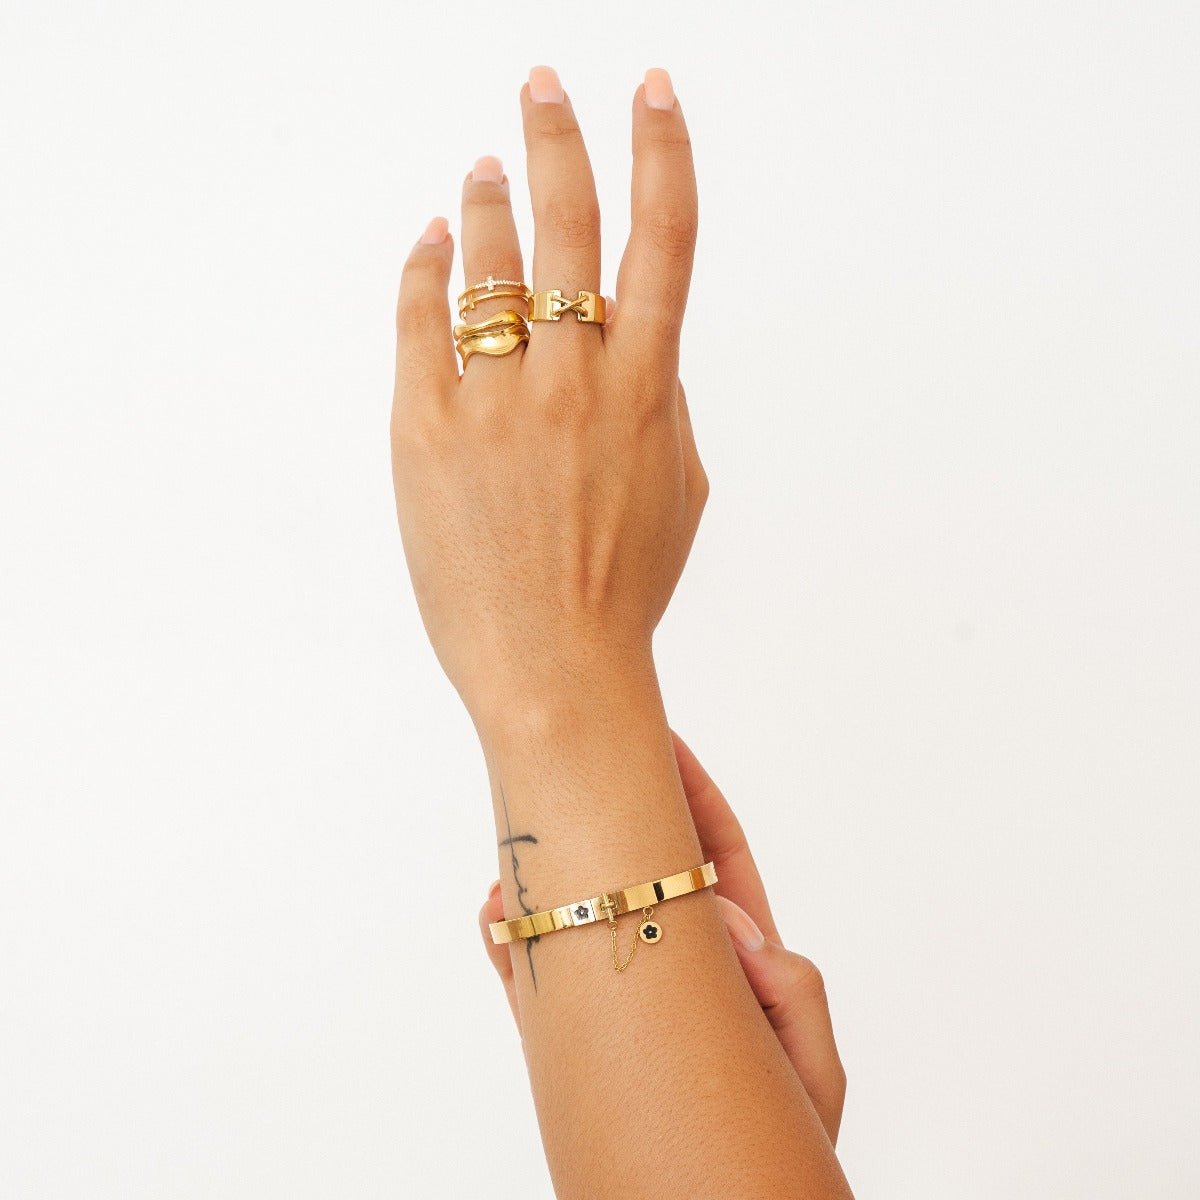 Bracelete Flor Lock Charm Banhada em Ouro 18K - Murano Joias